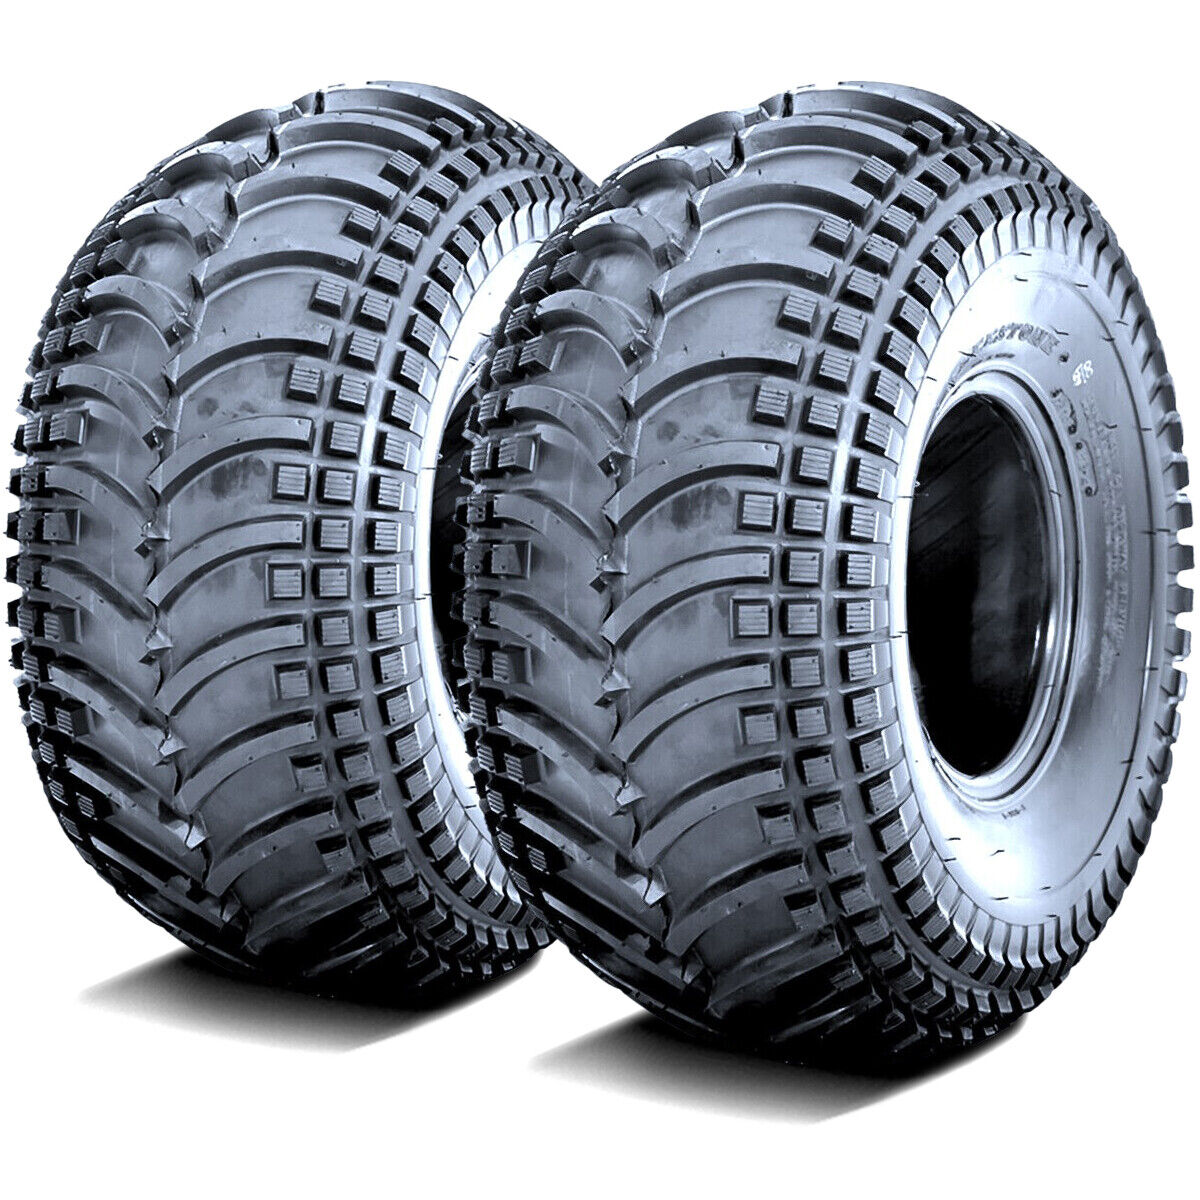 2 Tires Deestone D930 24x11.00-10 24x11-10 24x11x10 47F 4 Ply MT M/T Mud ATV UTV